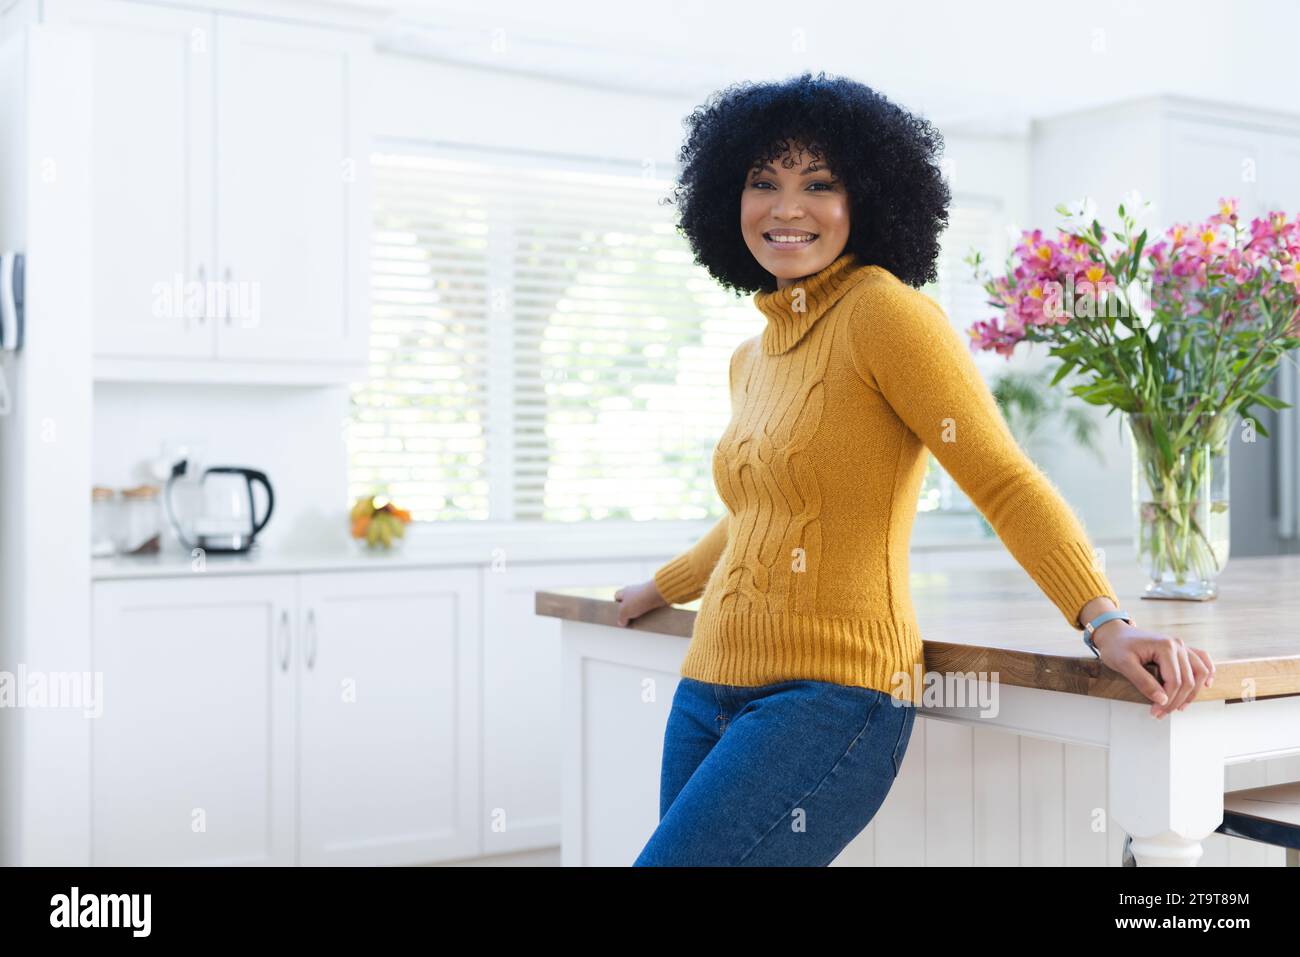 Felice donna afroamericana al bancone della cucina a casa, spazio fotocopie. All'interno, espressione, gesticolazione, linguaggio del corpo e femminilità, inalterati. Foto Stock